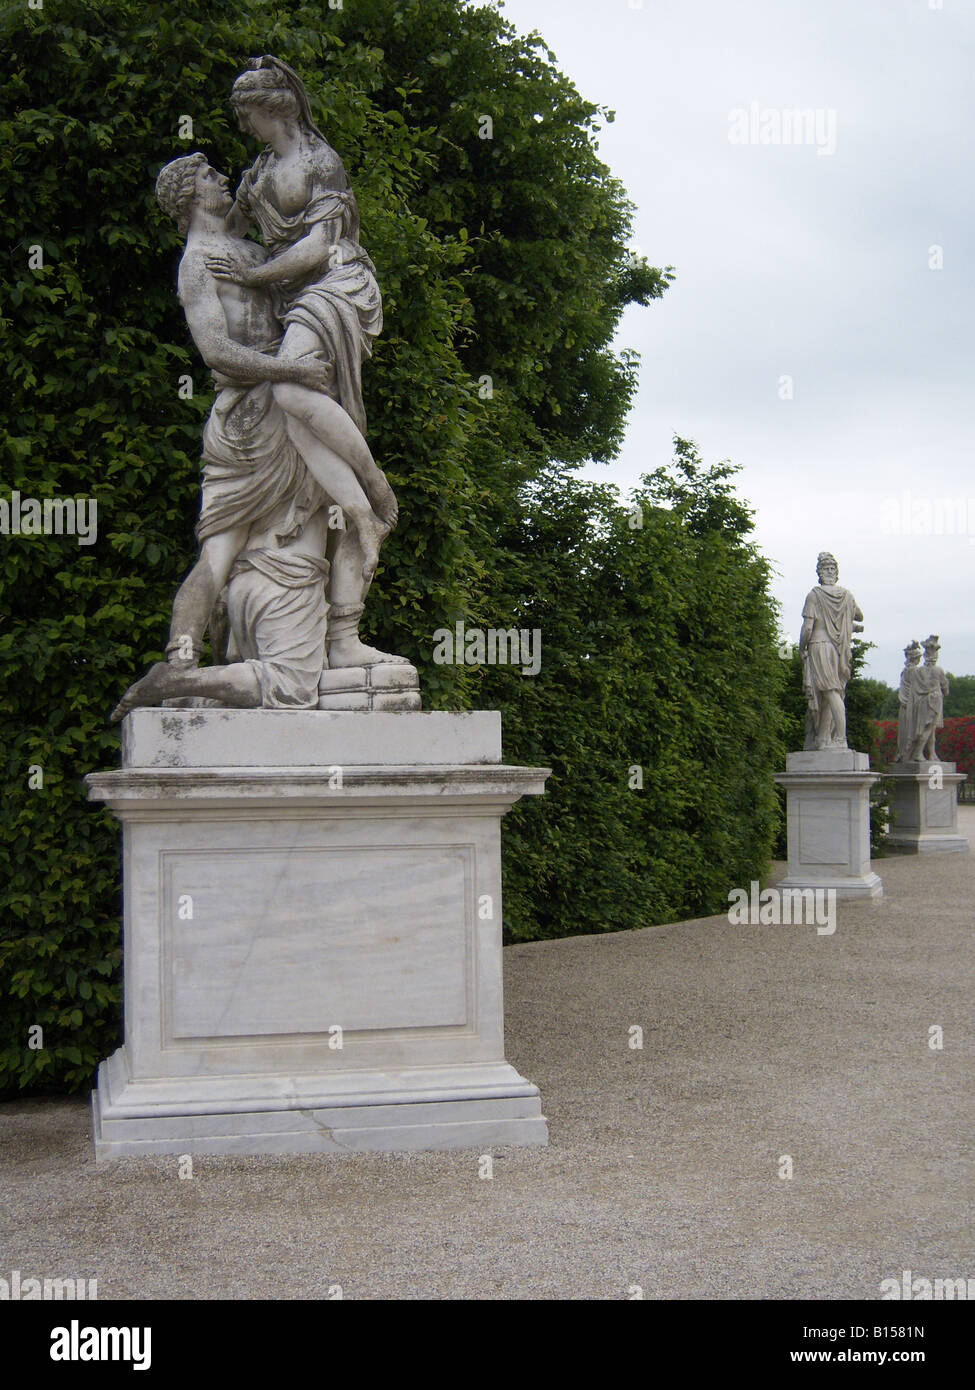 Des statues dans le jardin du château de Schönbrunn, Vienne, Autriche, Europe. Photo par Willy Matheisl Banque D'Images